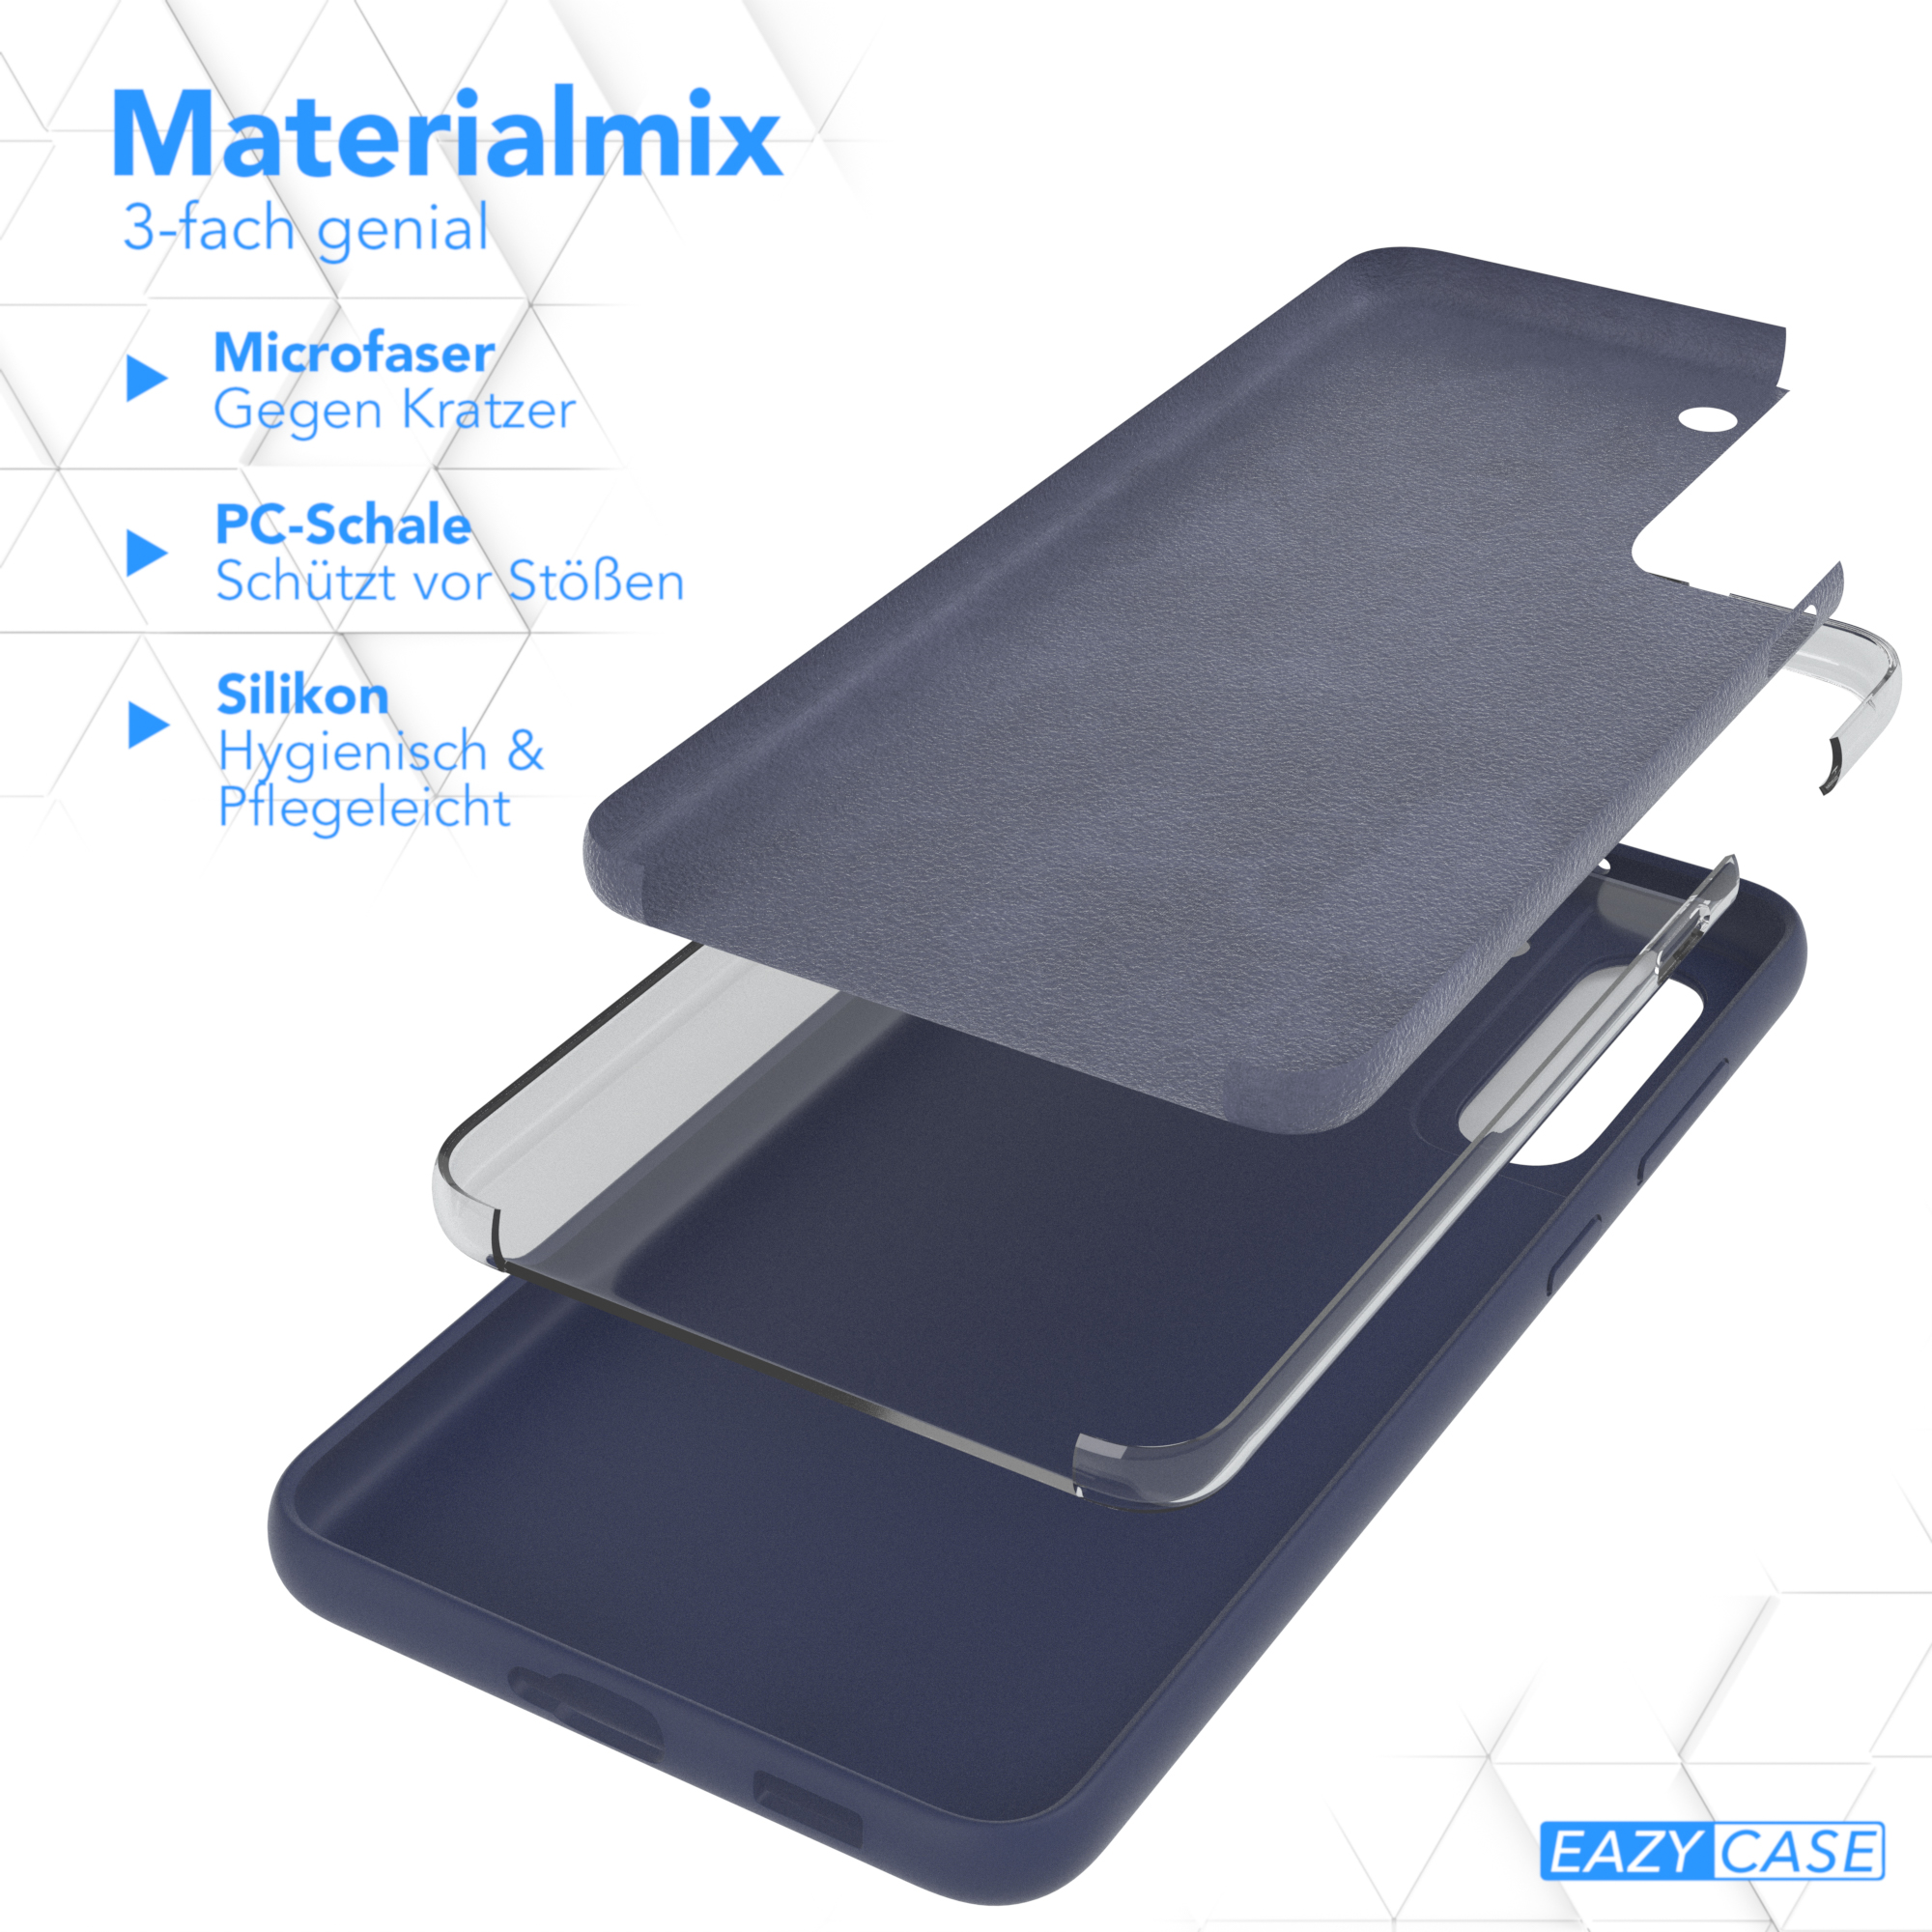 Samsung, Backcover, Premium S21 Silikon 5G, Nachtblau FE EAZY Handycase, / CASE Blau Galaxy